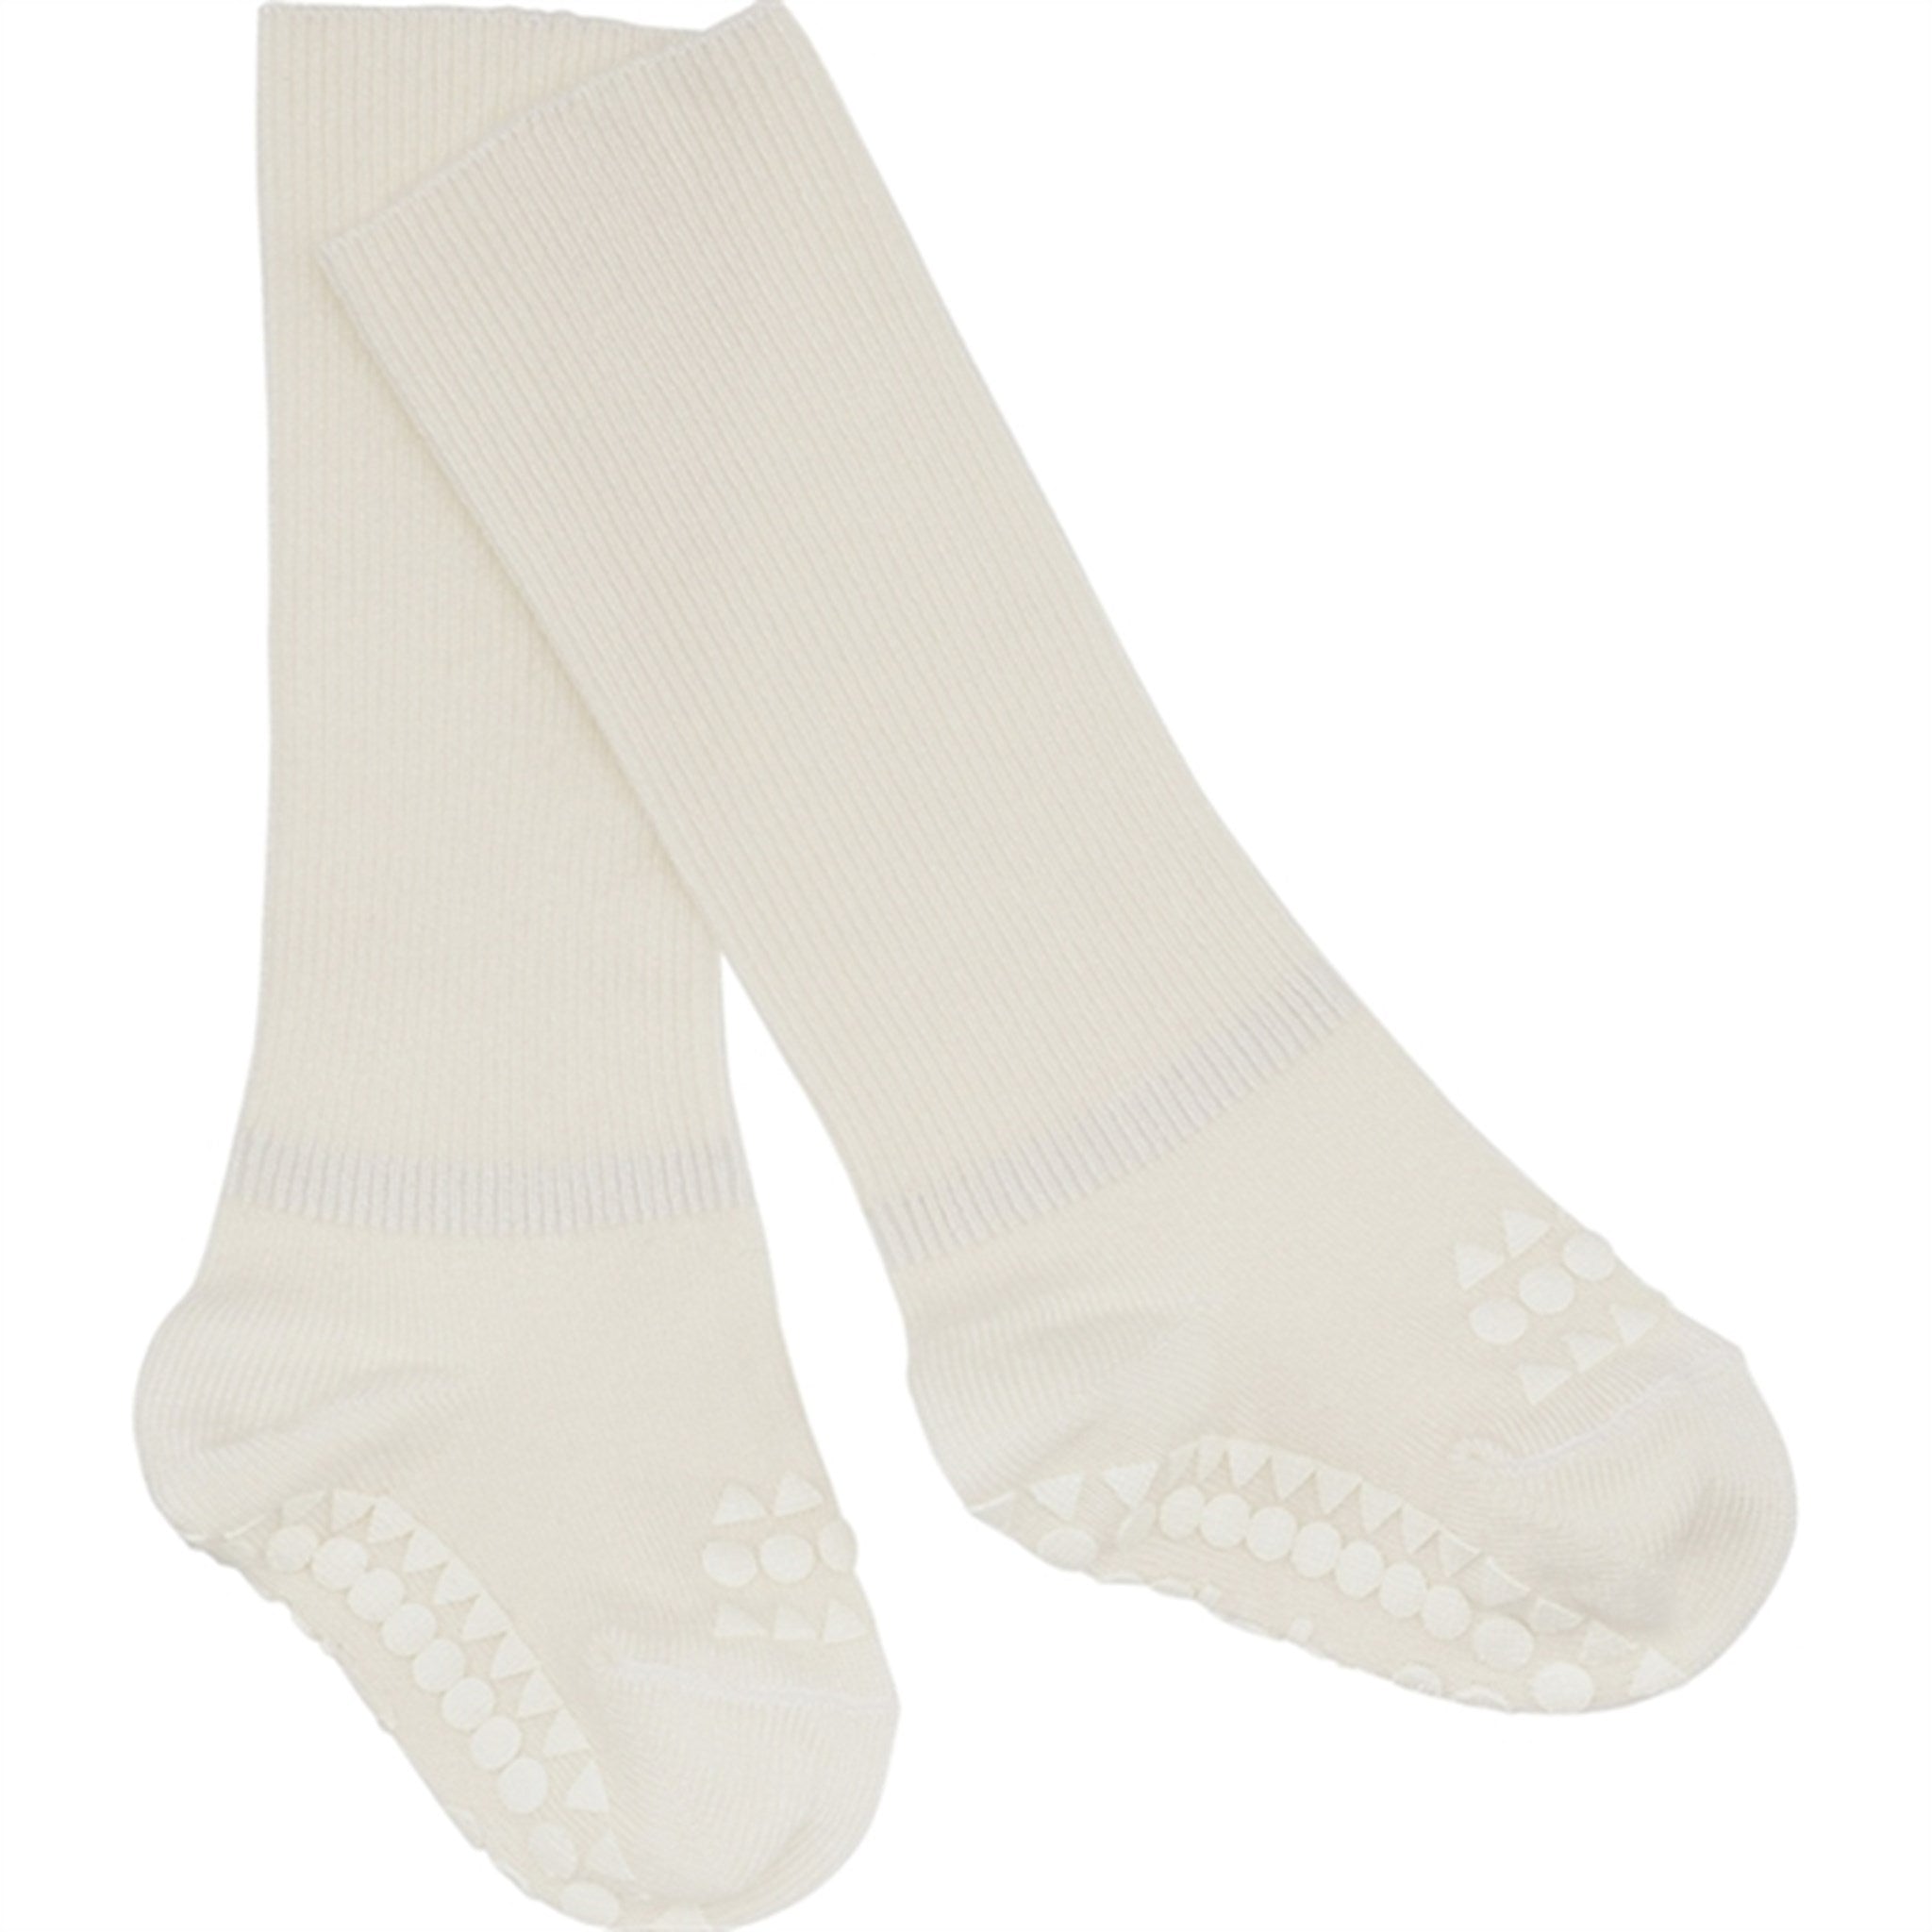 GObabyGO Bamboo Non-slip Socks Antislip Offwhite 5